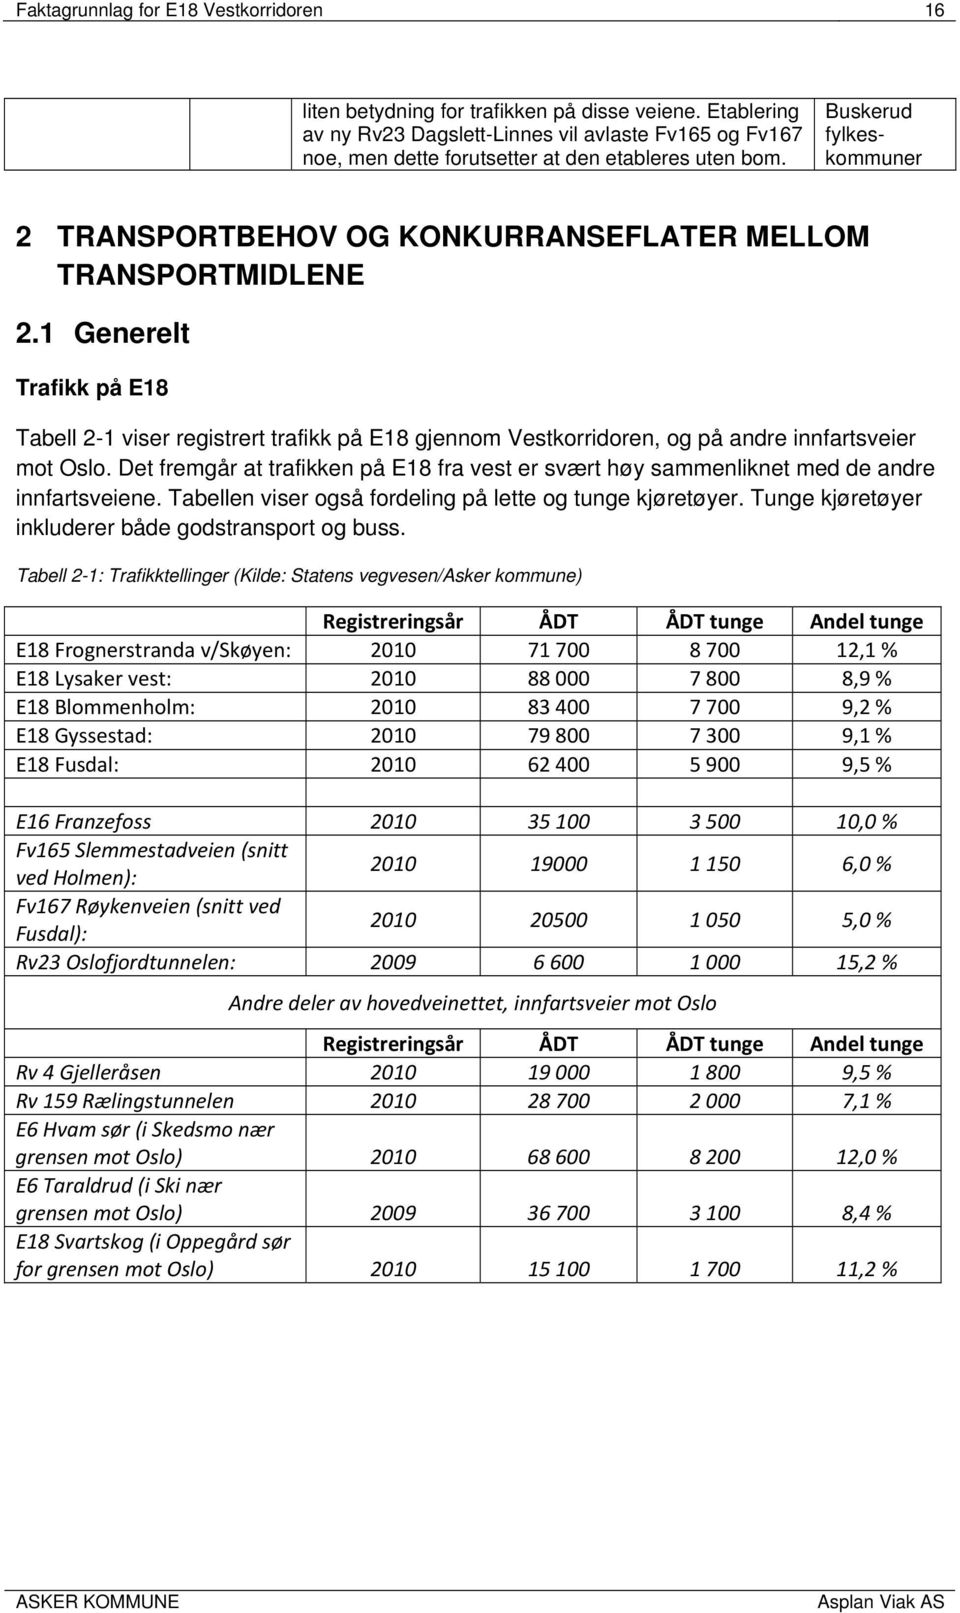 Buskerud fylkeskommuner 2 TRANSPORTBEHOV OG KONKURRANSEFLATER MELLOM TRANSPORTMIDLENE 2.